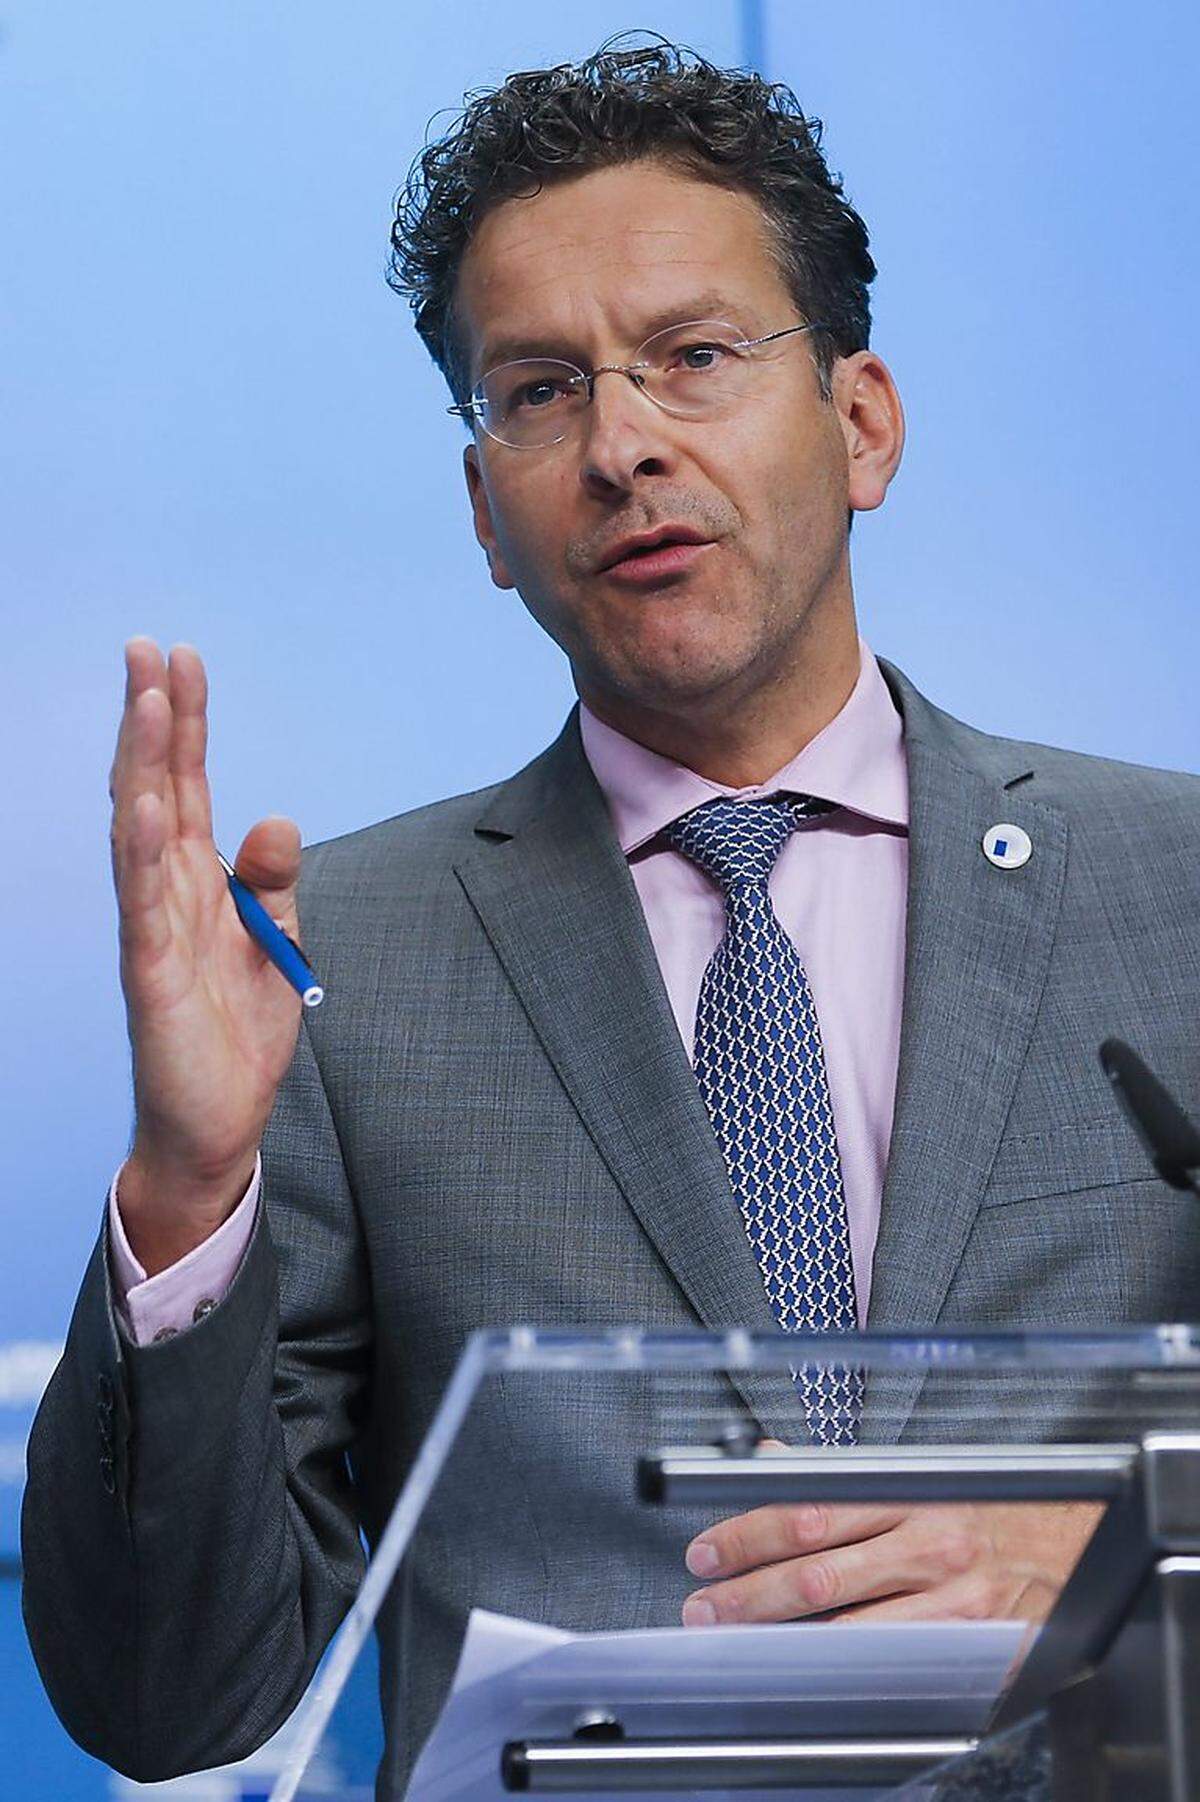 Jeroen Dijsselbloem hat in diesen Tagen wohl einen der unangenehmsten Jobs: Als Chef der Eurogruppe muss er entgegengesetzte Positionen zusammenführen.